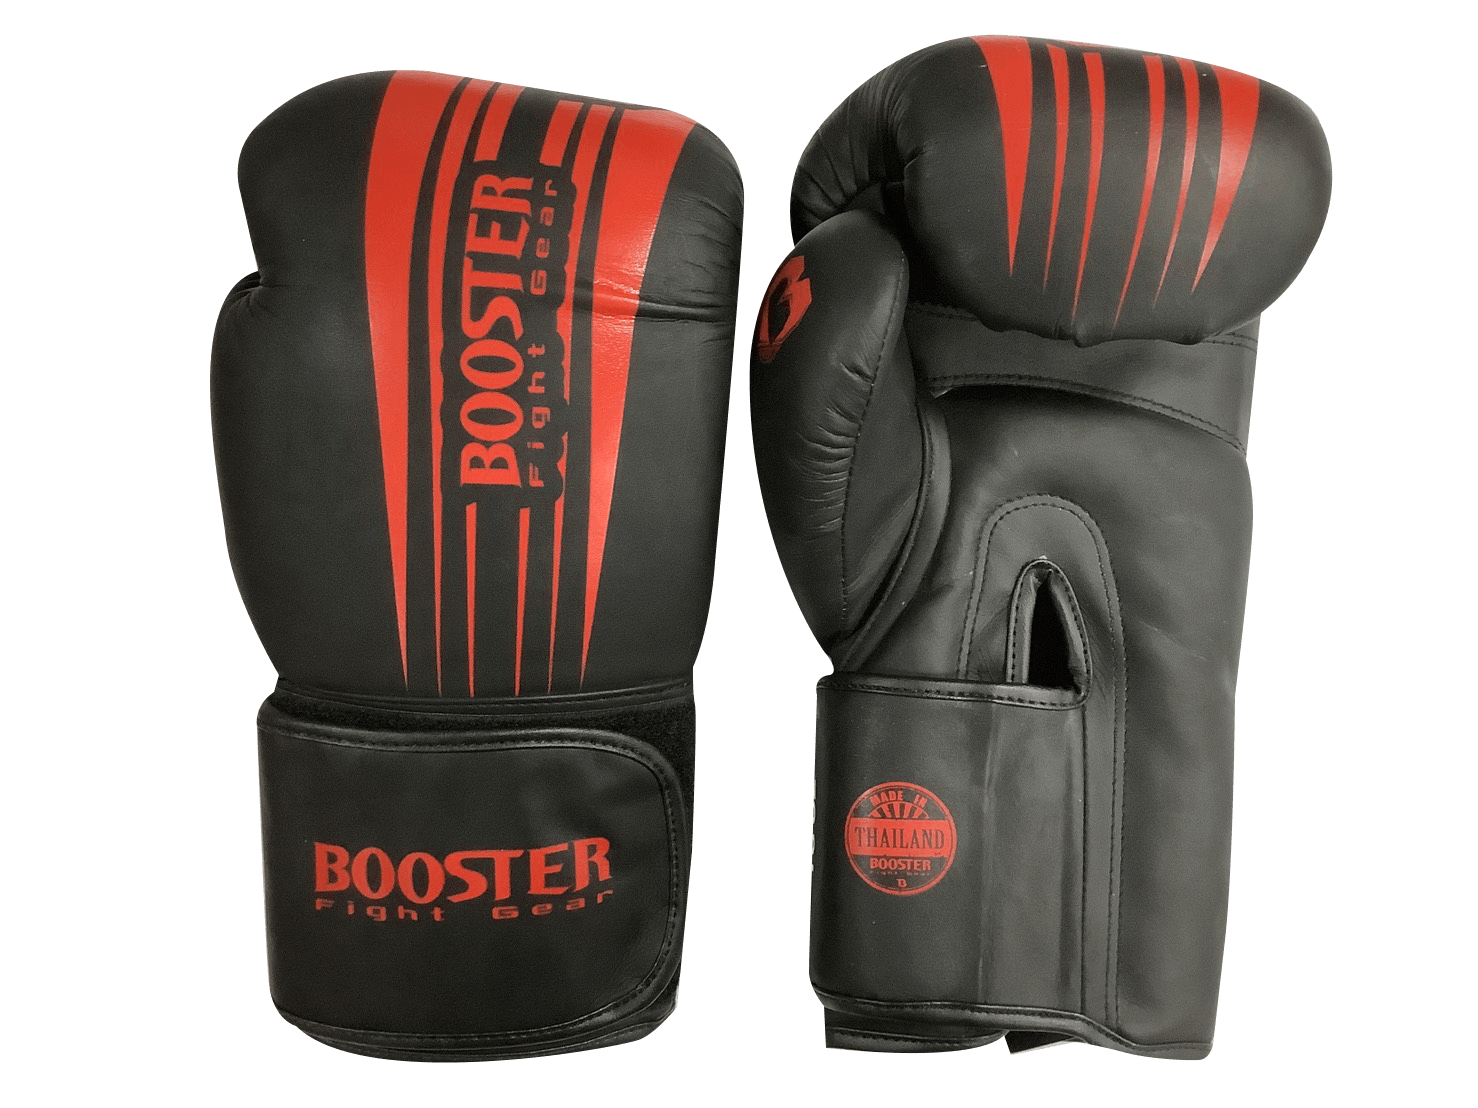 Booster Boxing Gloves PRO BGSV7 Black Red